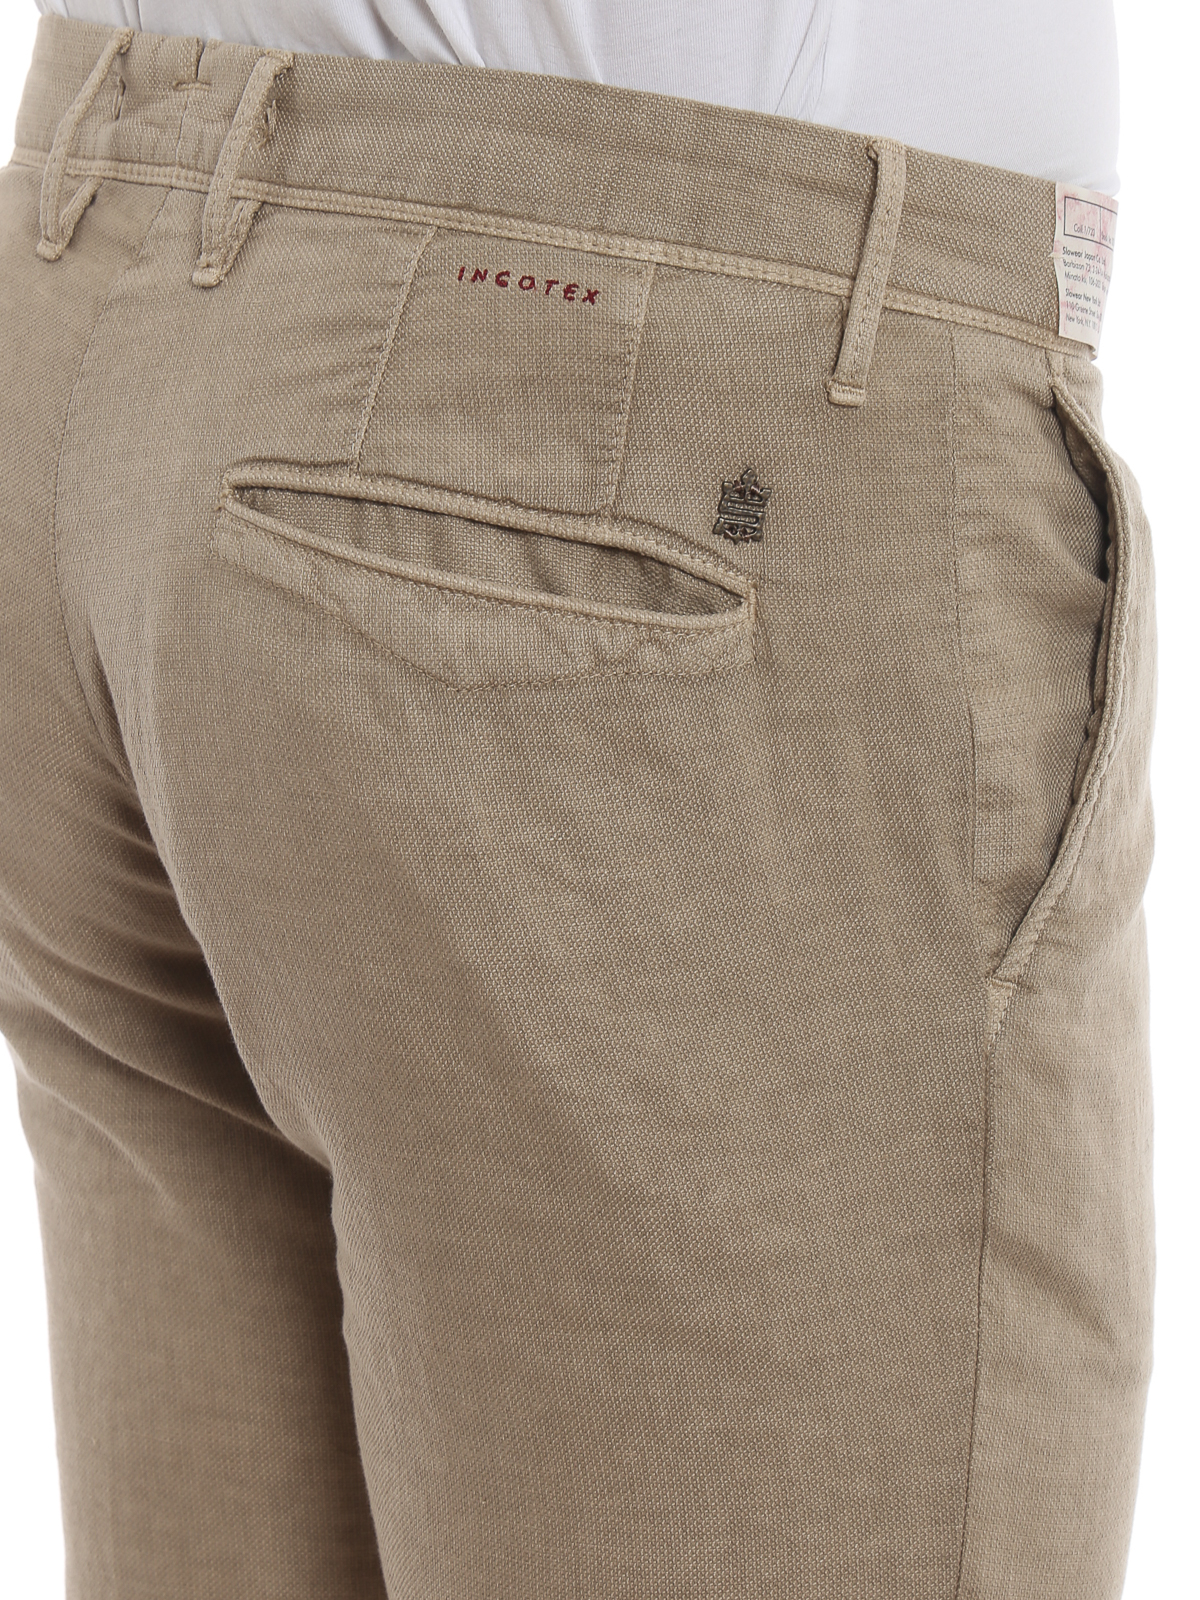 Casual trousers Incotex - Slacks beige cotton and linen slim pants